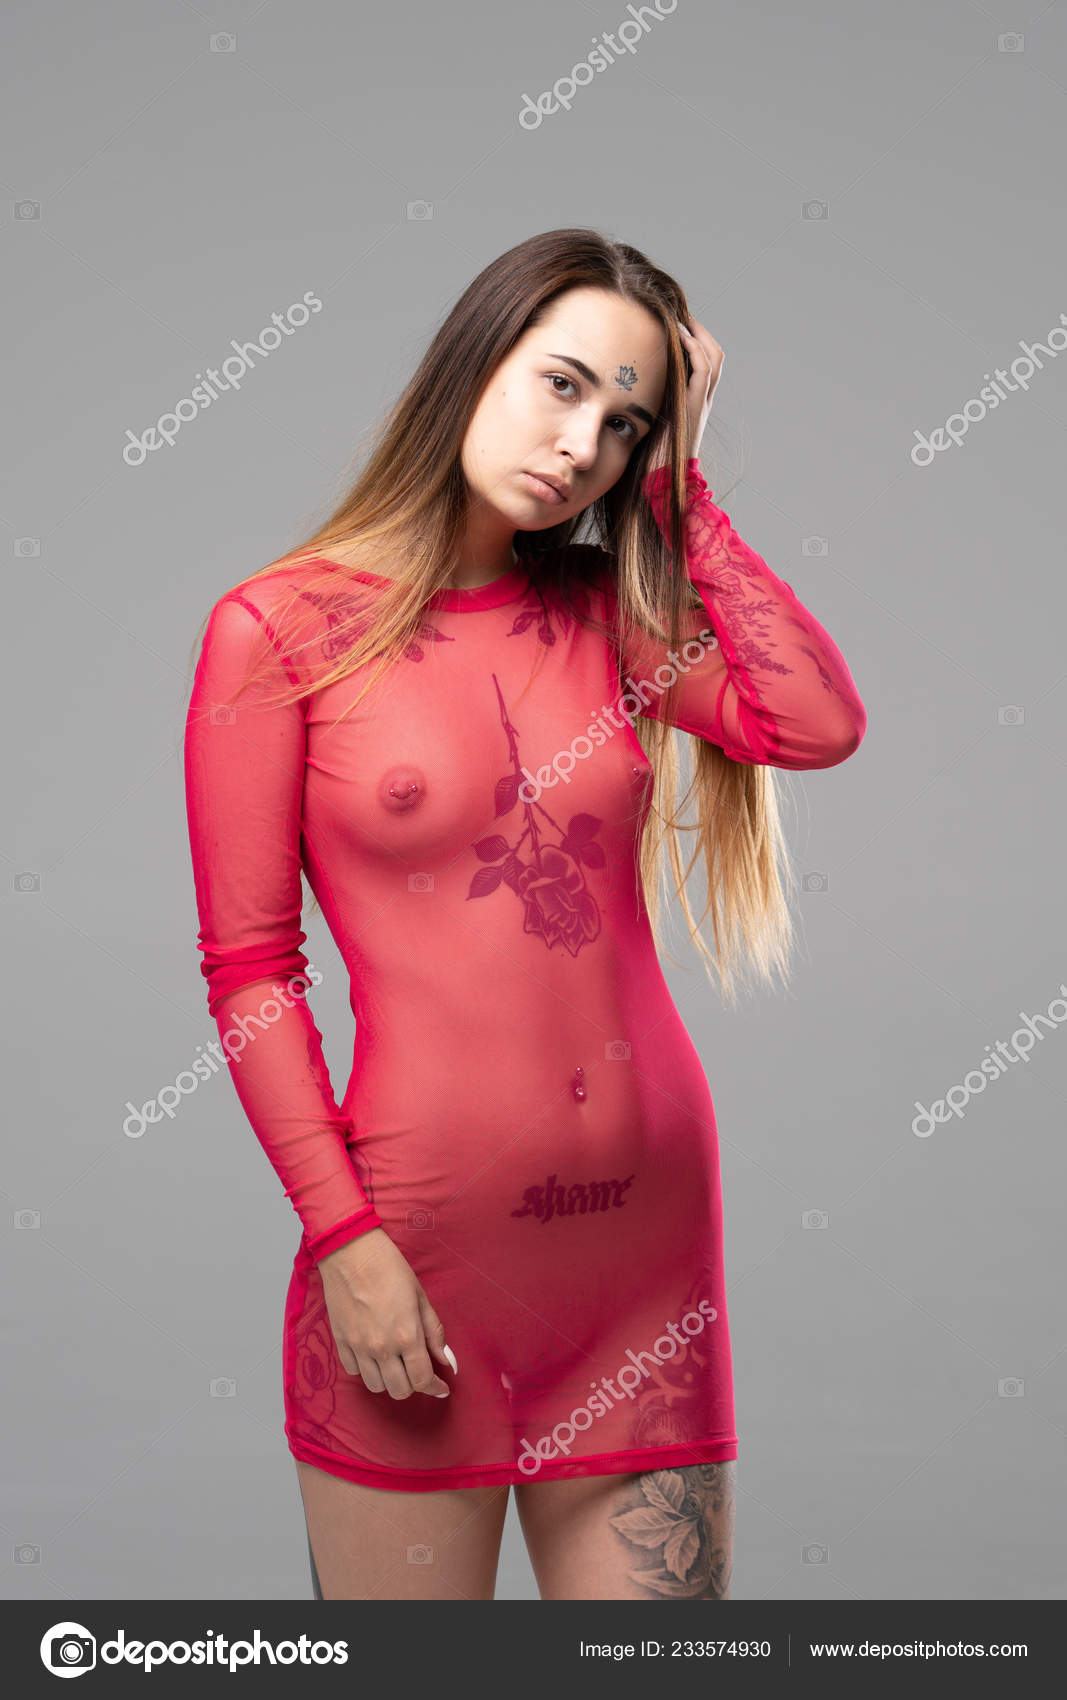 https://st4n.depositphotos.com/10086424/23357/i/1600/depositphotos_233574930-stock-photo-young-beautiful-girl-posing-nude.jpg